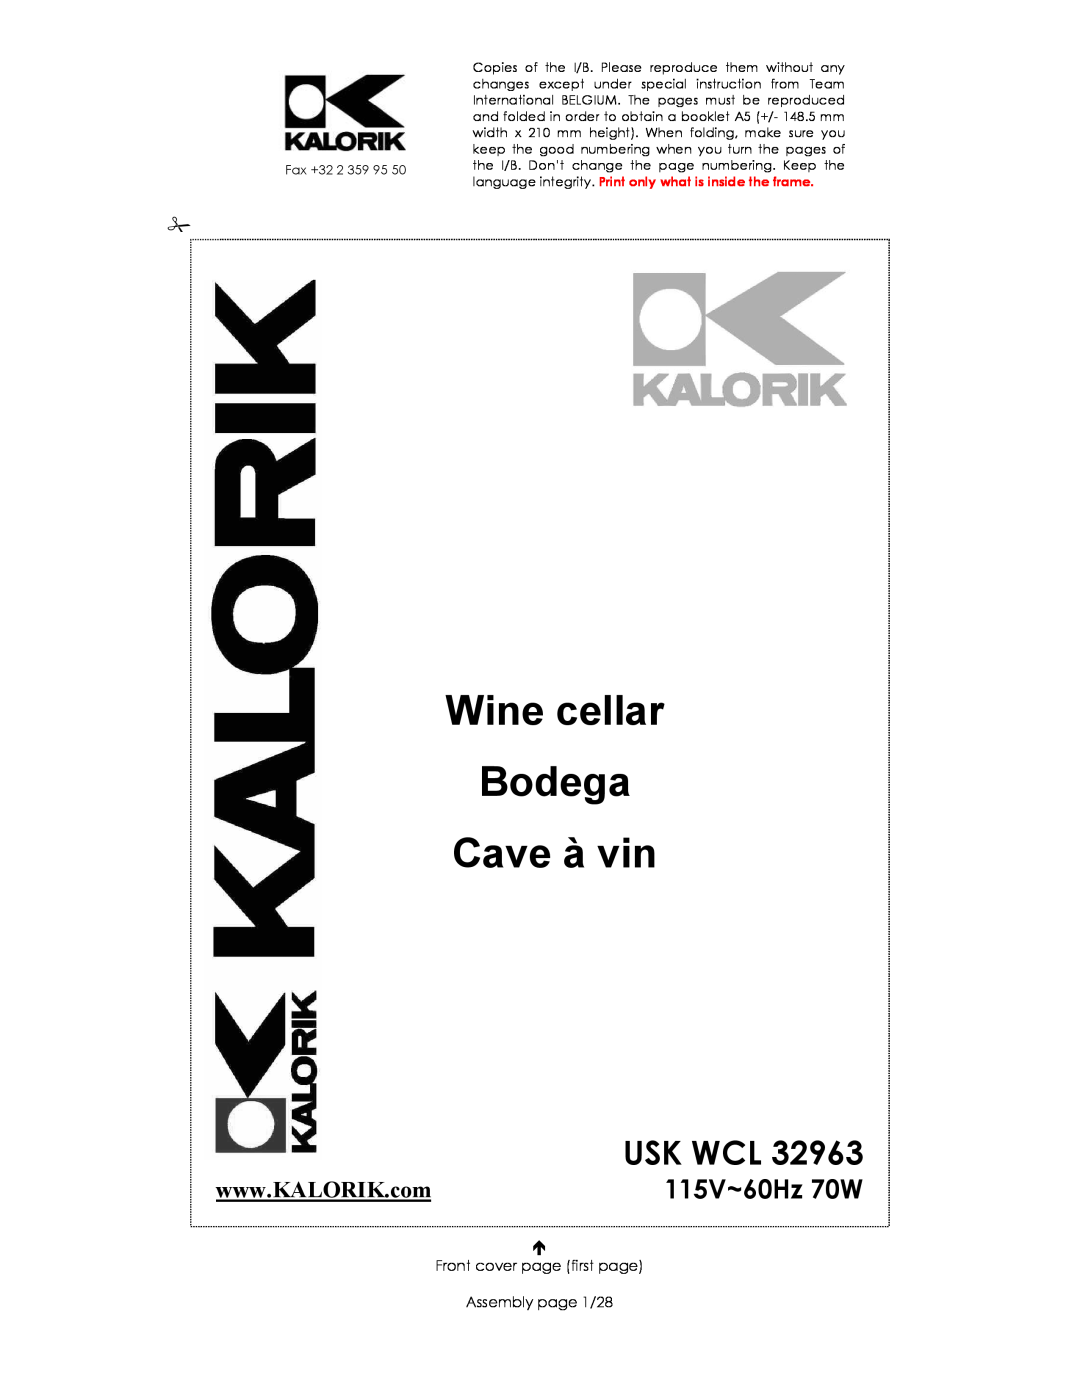 Kalorik USK WCL 32963 manual 115V~60Hz 70W, Wine cellar Bodega Cave à vin, Usk Wcl 